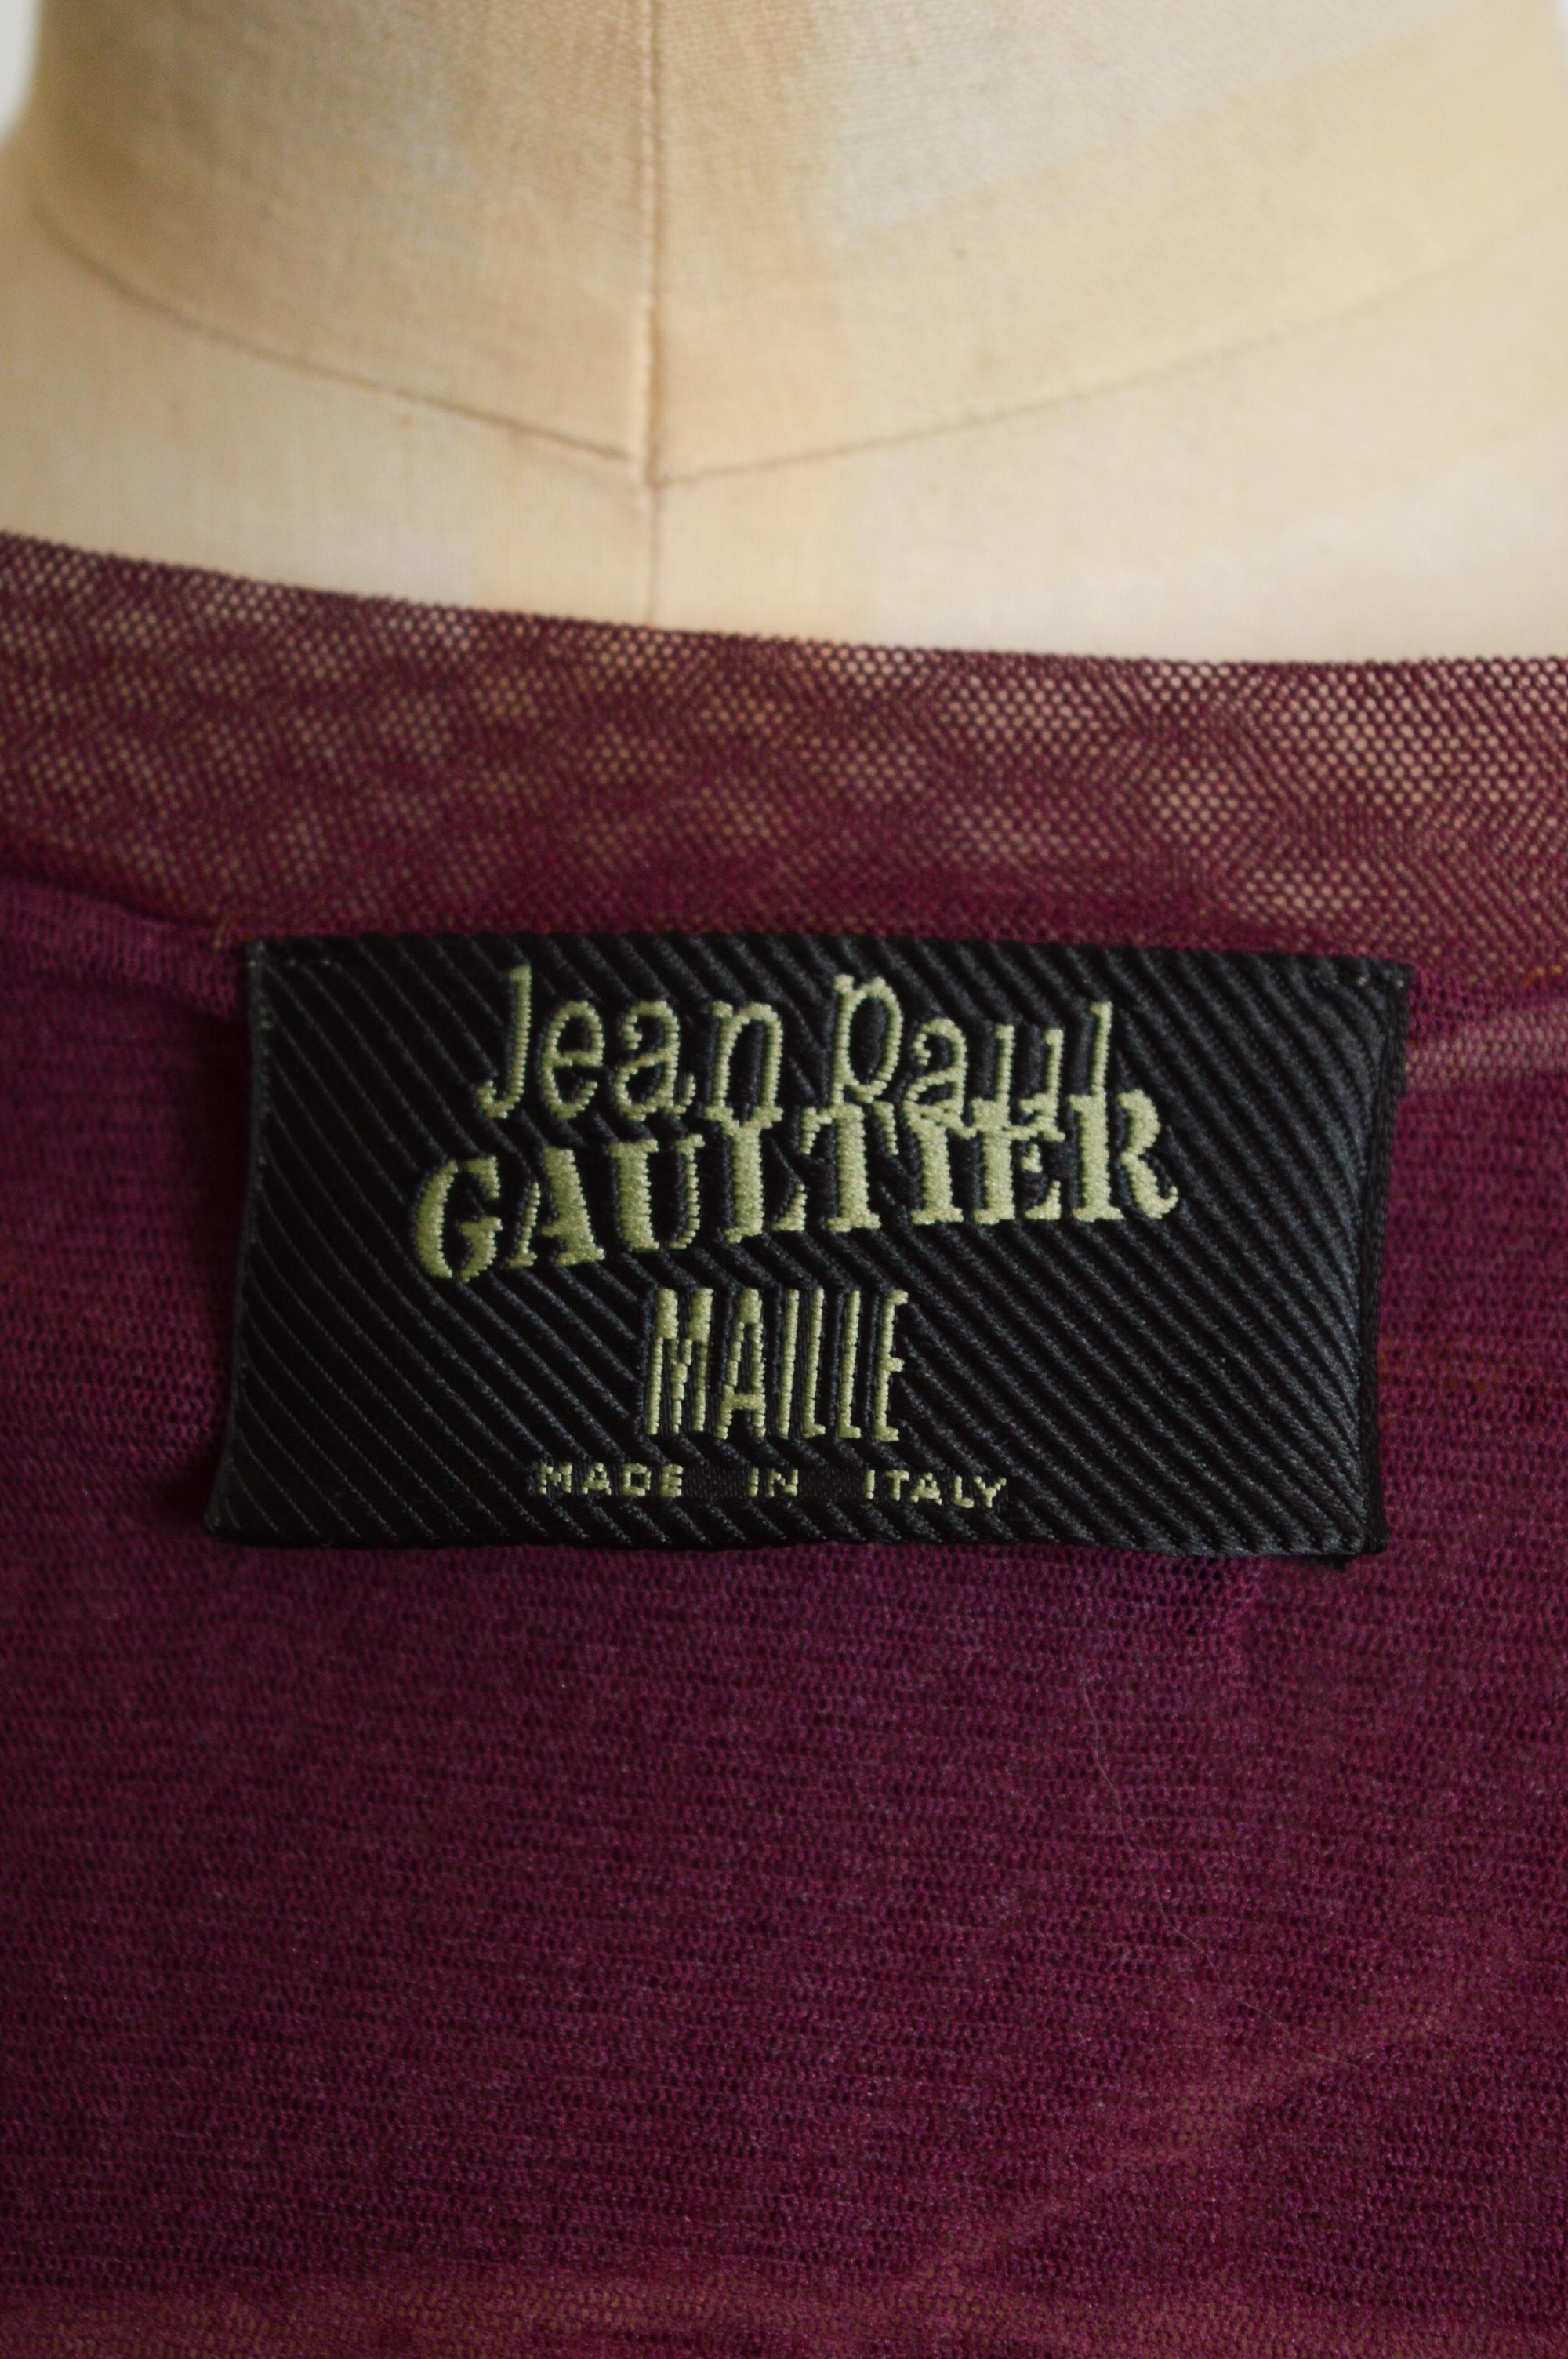 Spring Summer 1999 Jean Paul Gaultier Venus de Milo Goddess Mesh Top - Baby Tee For Sale 3